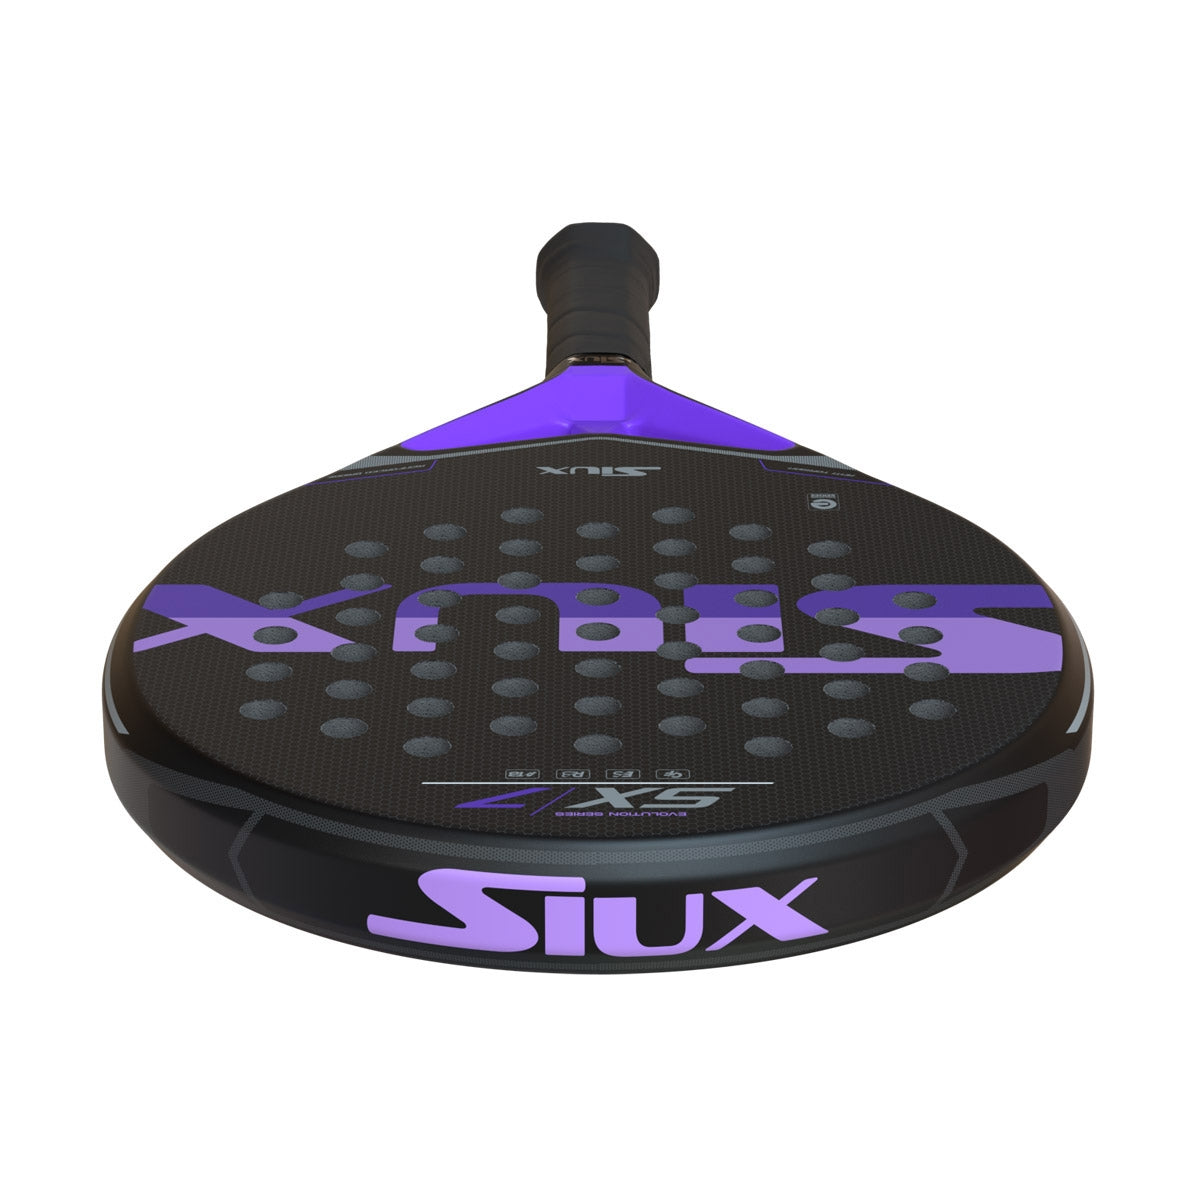 Siux SX7 Air padel racket